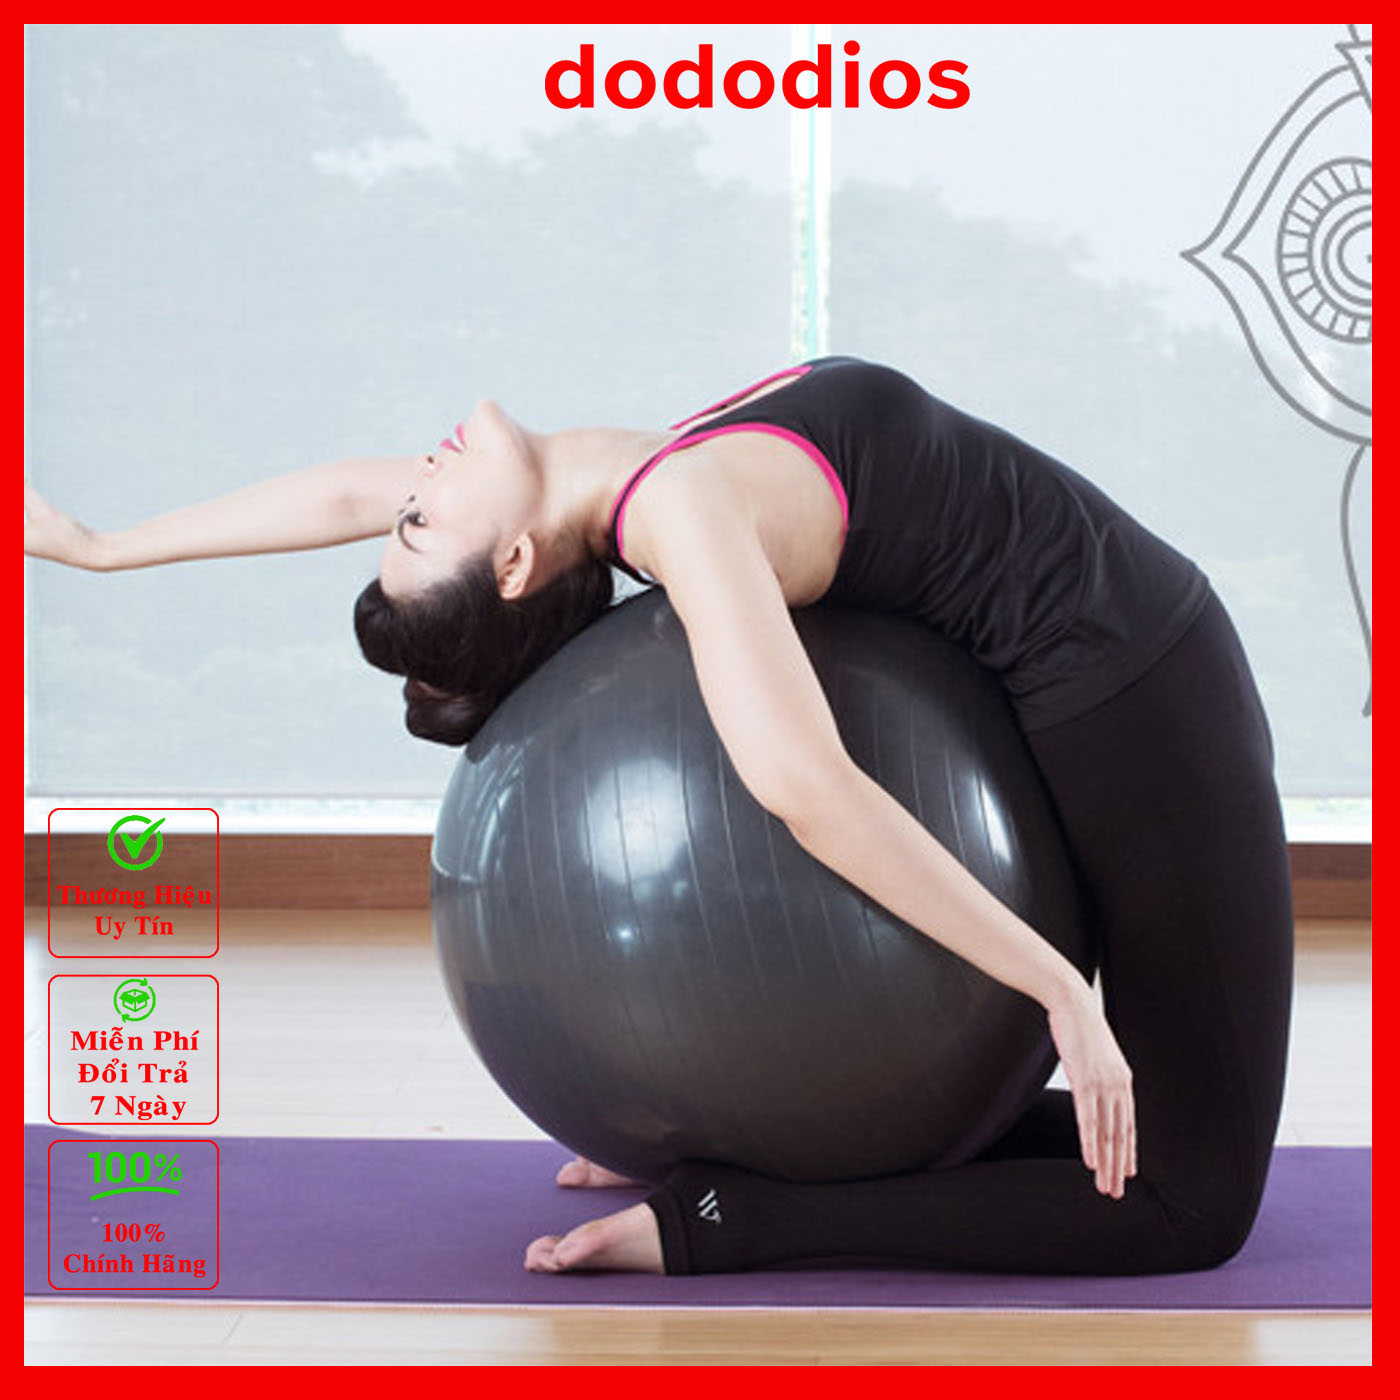 Bóng Tập Yoga Cỡ Đại 65cm, 75cm - Bóng Tròn Yoga Cao Cấp - Hàng Chính Hãng dododios